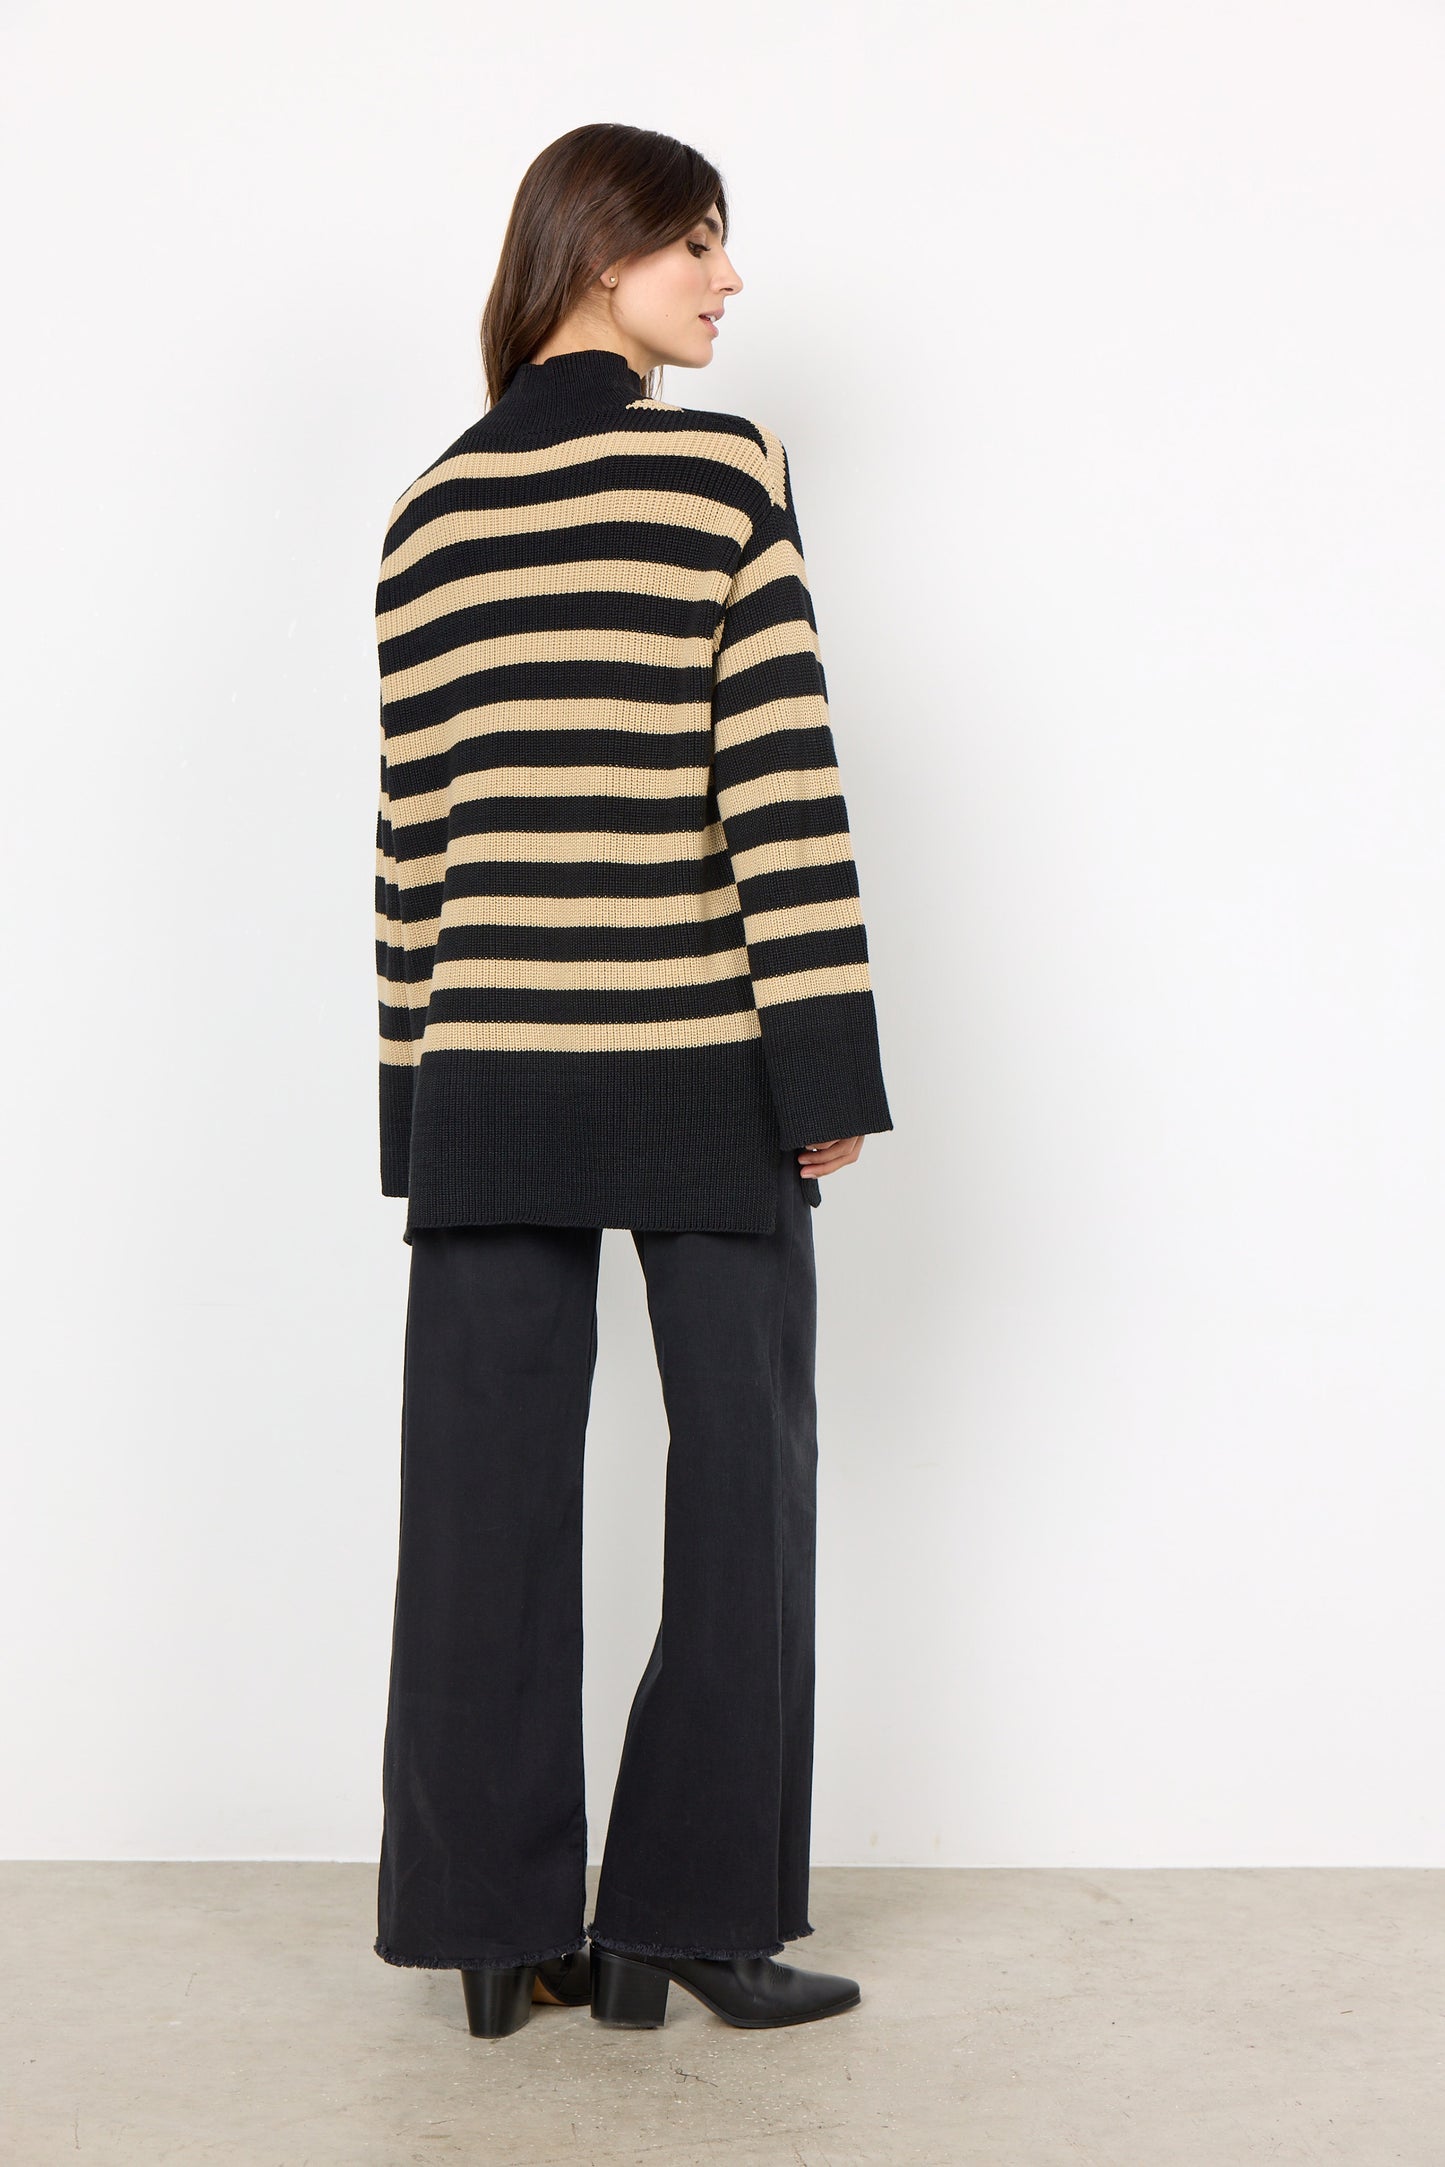 SOYA CONCEPT JULIA 6 Black & Tan Striped Knit